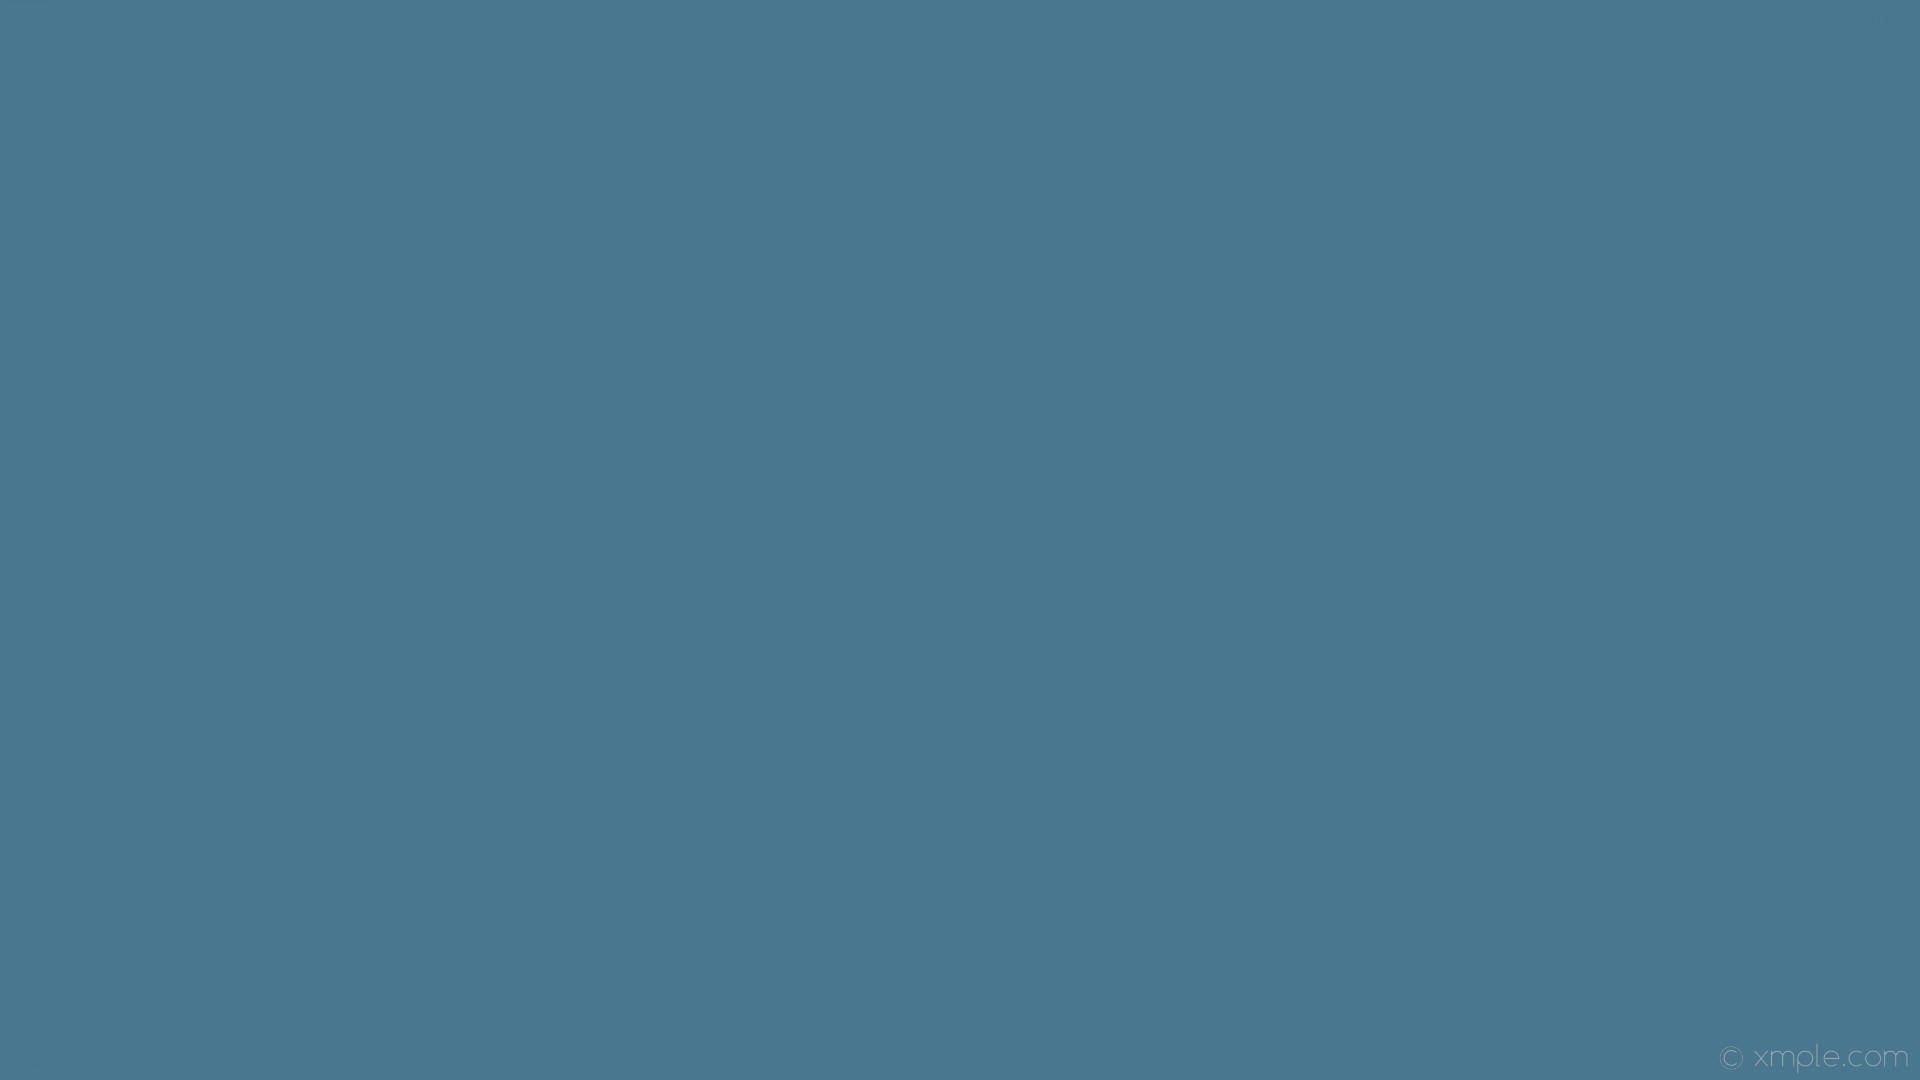 Grayish Azure Plain Background Background